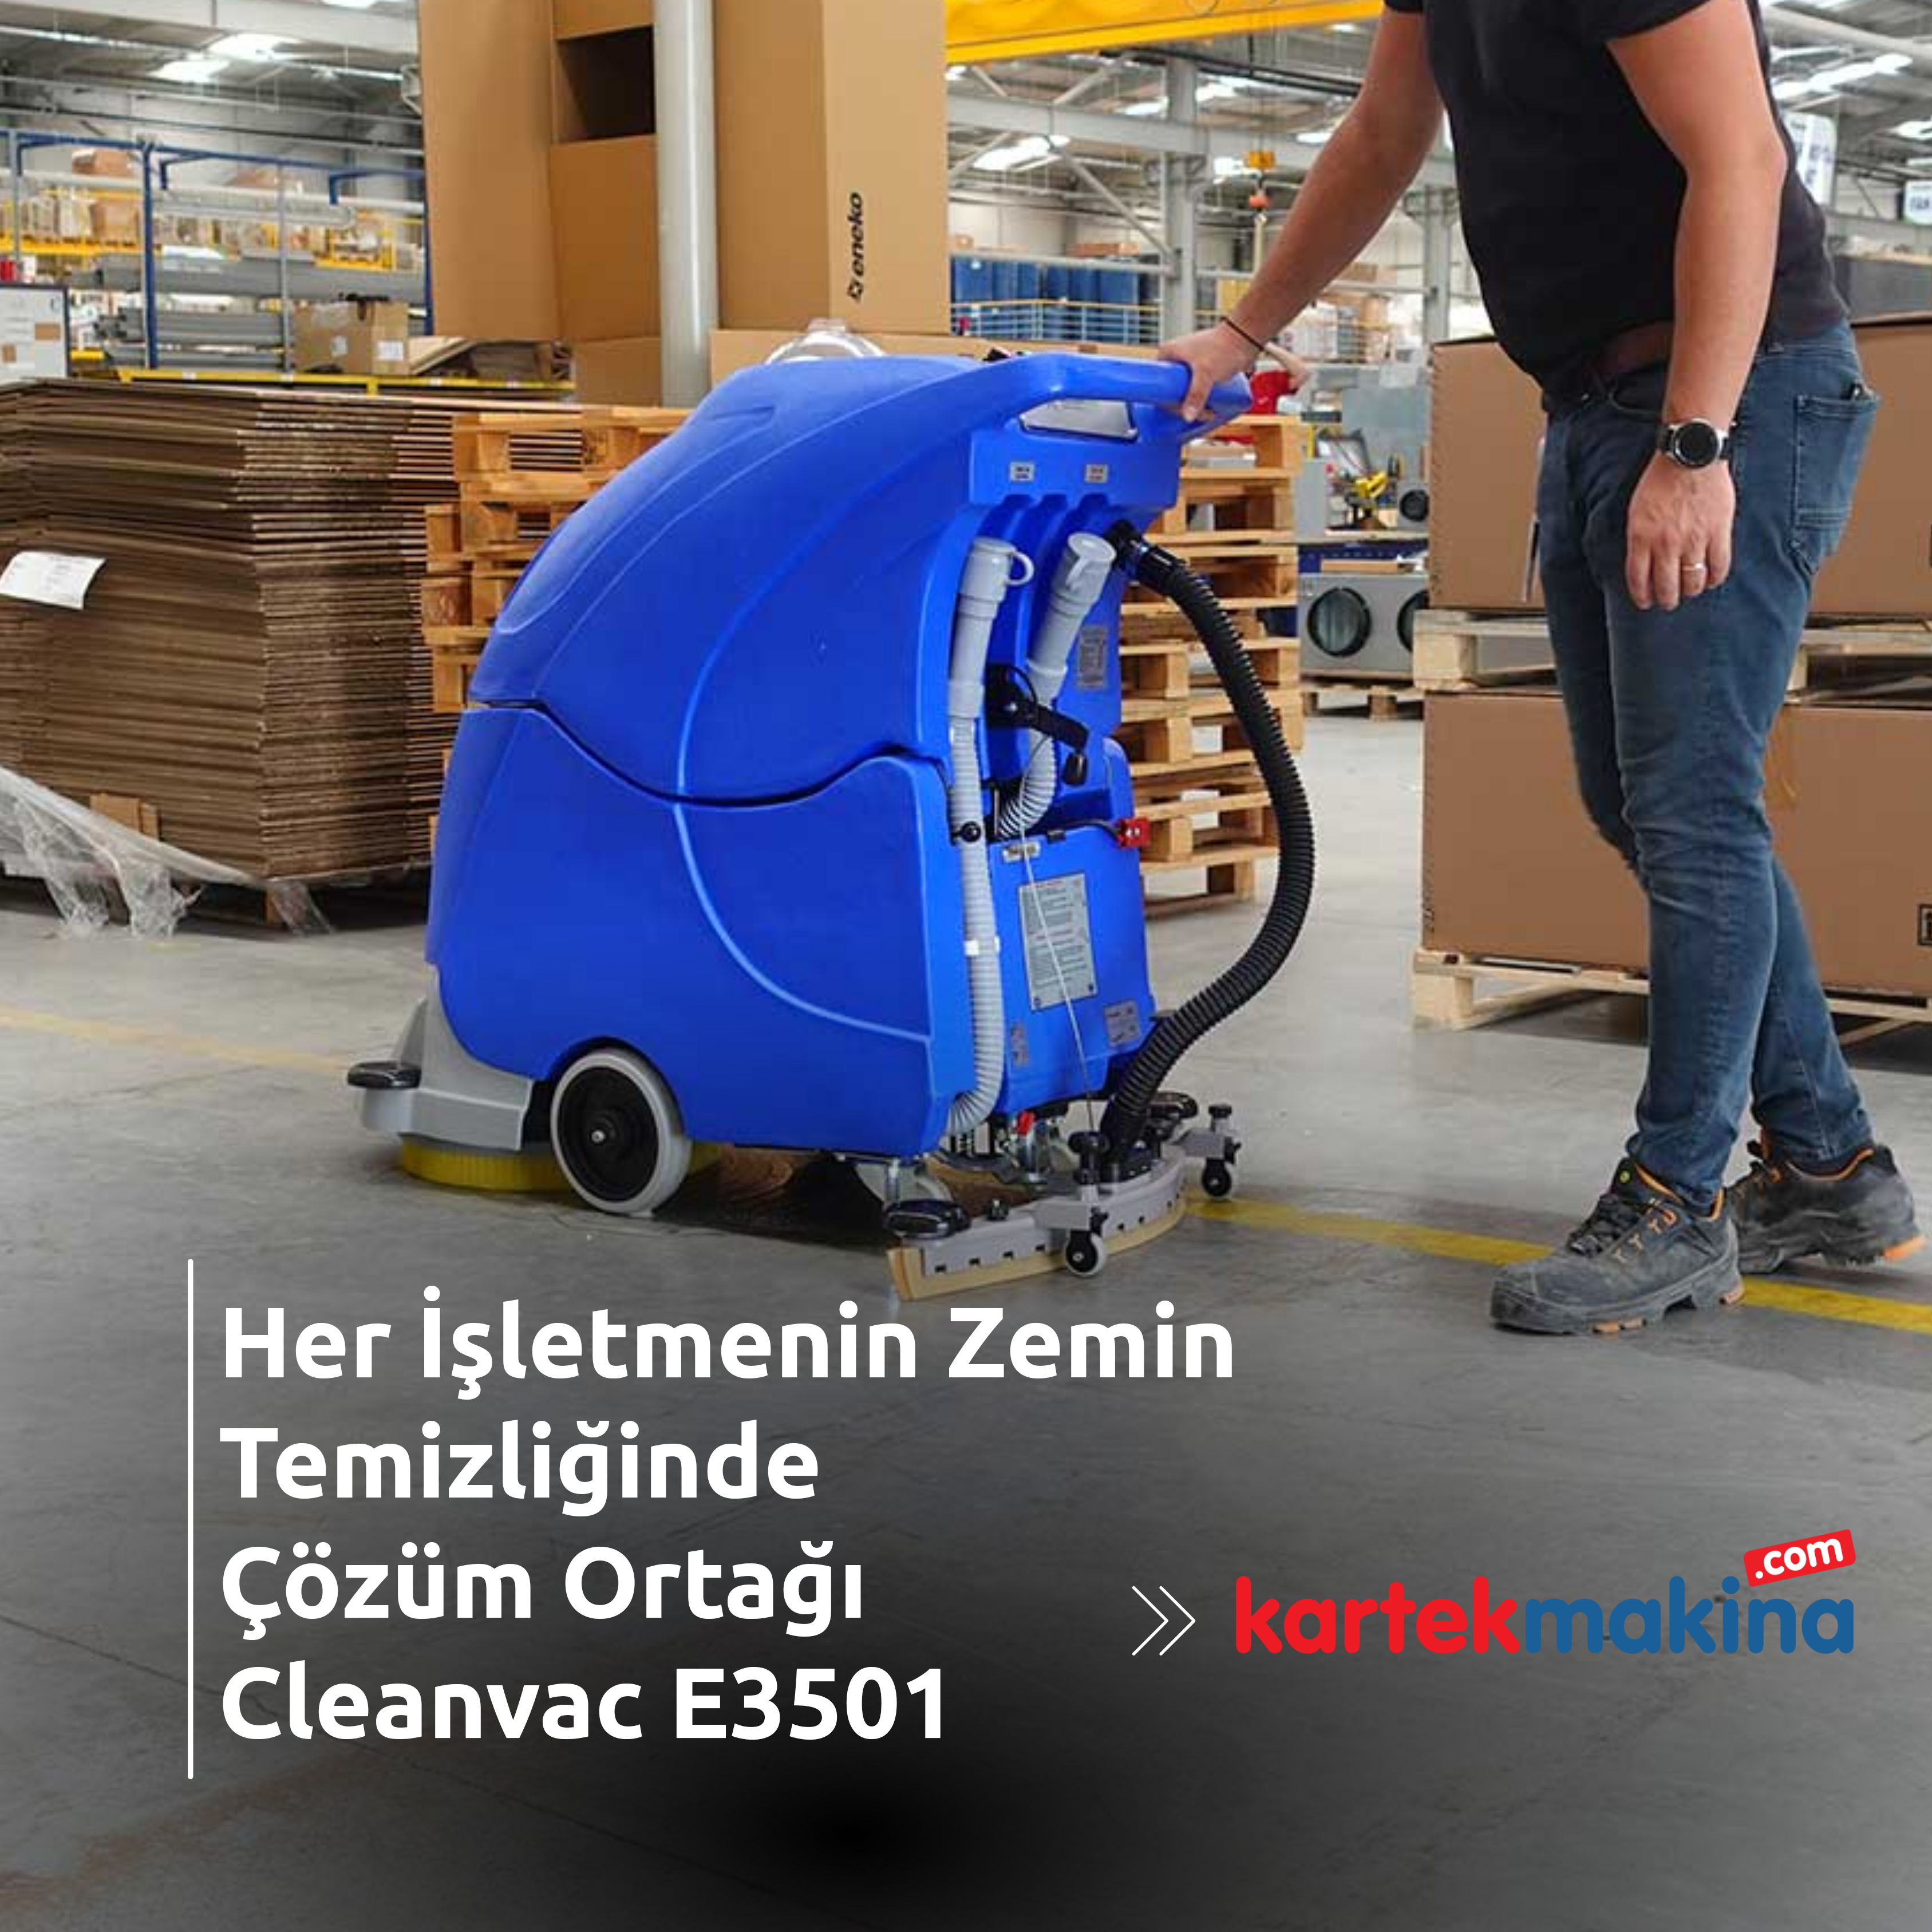 Her İşletmenin Zemin Temizliğinde Çözüm Ortağı Cleanvac E3501